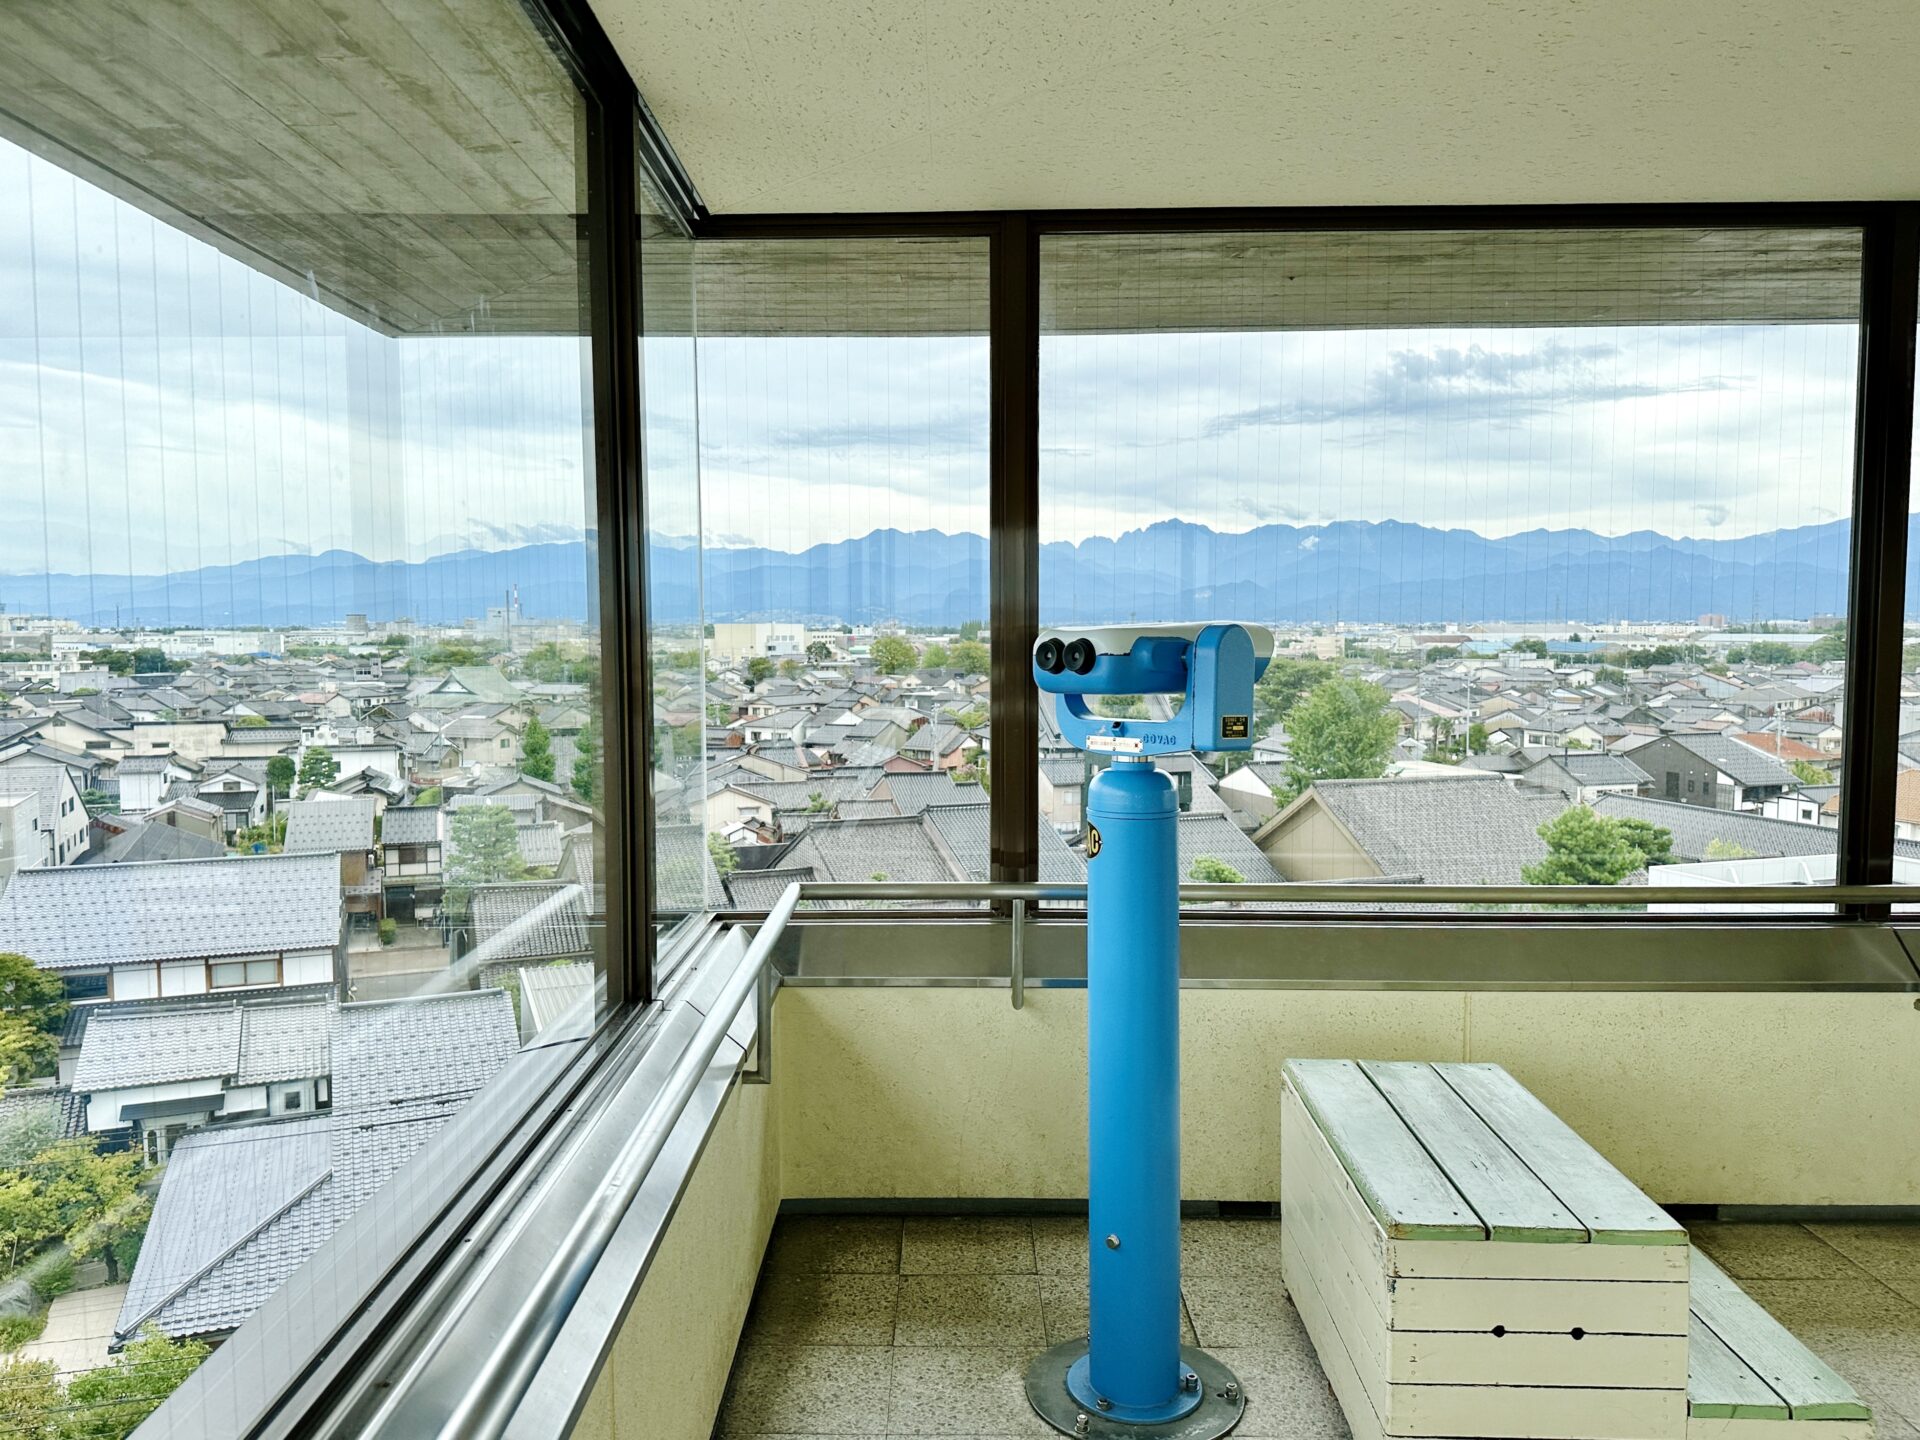 岩瀬地区 観光スポット「富山港展望台」無料の望遠鏡